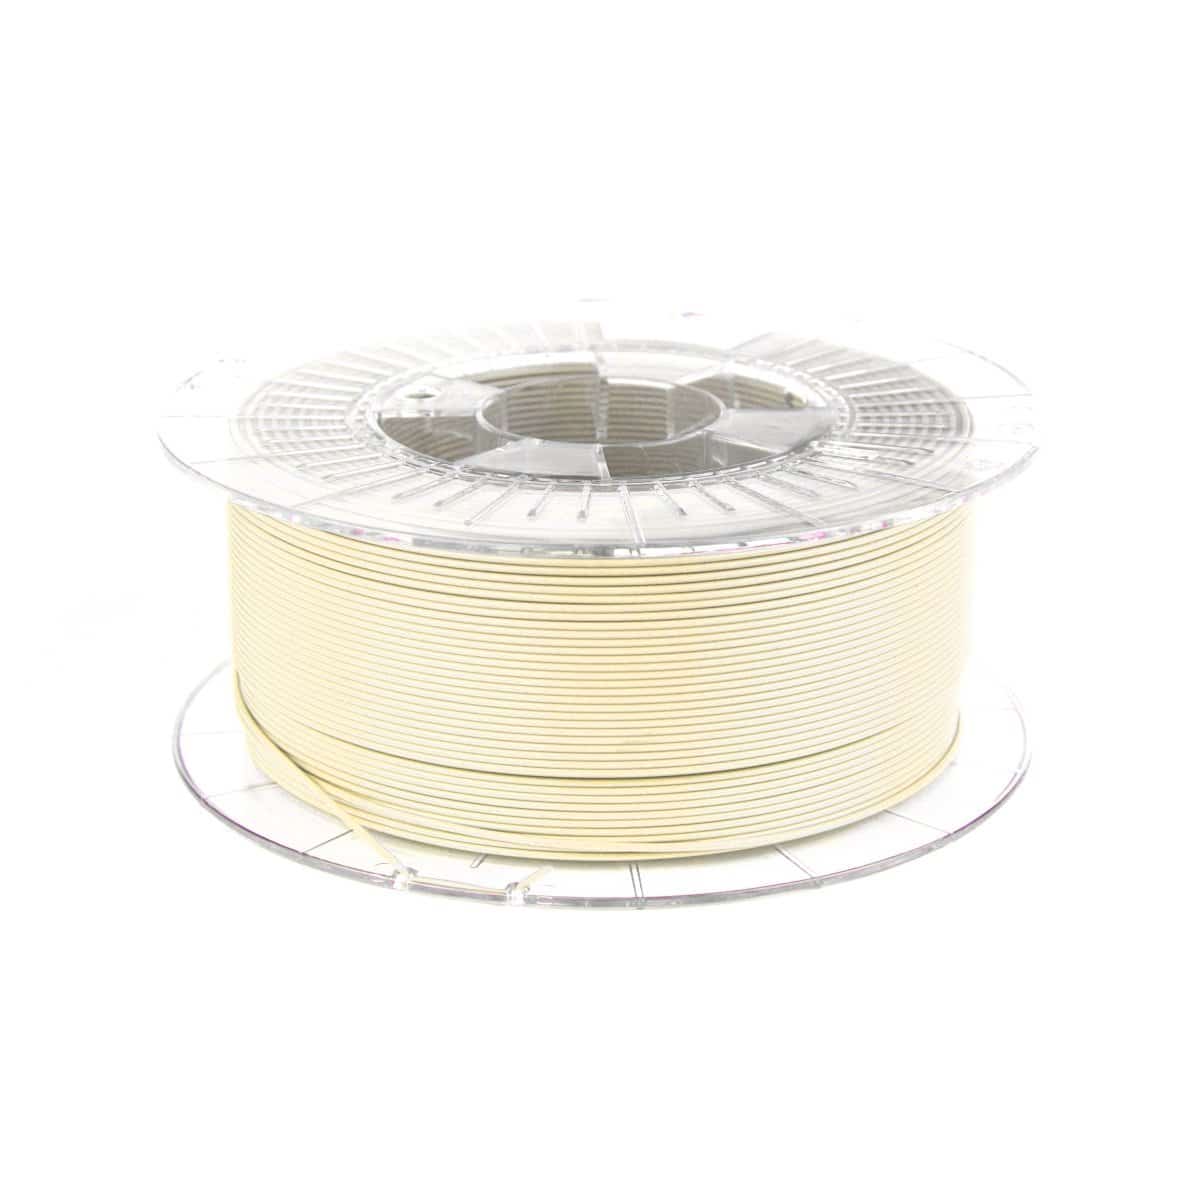 Køb Spectrum Filaments - PLA - 1.75mm - Ivory Beige - 1 kg filament - Pris 160.00 kr.